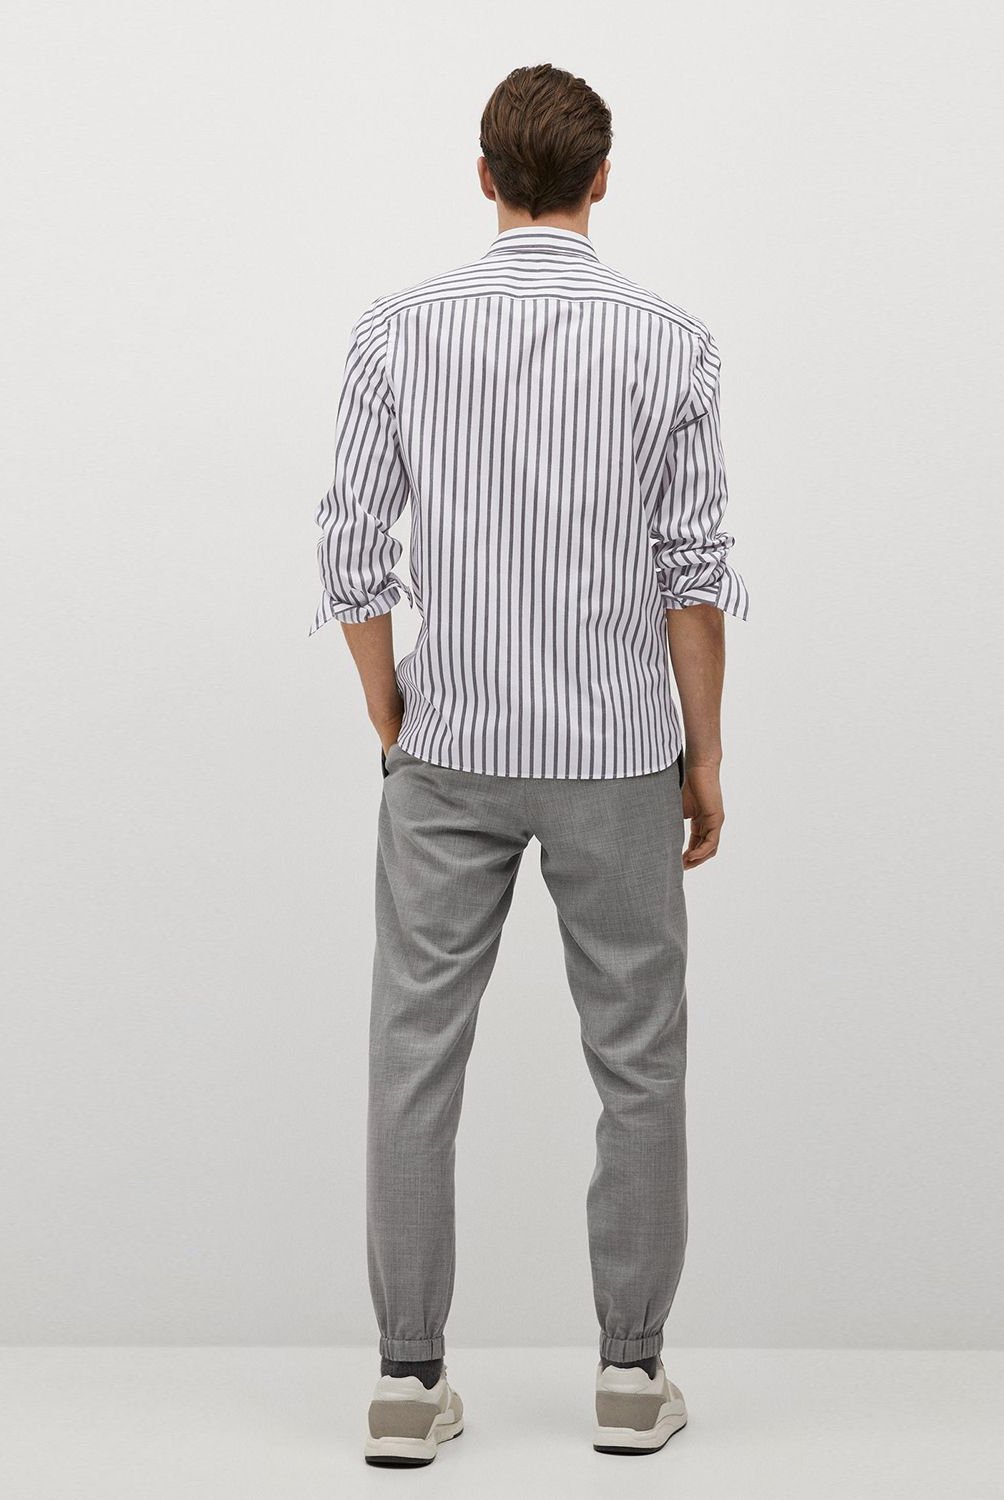 MANGO - Camisa casual para Hombre Slim MANGO